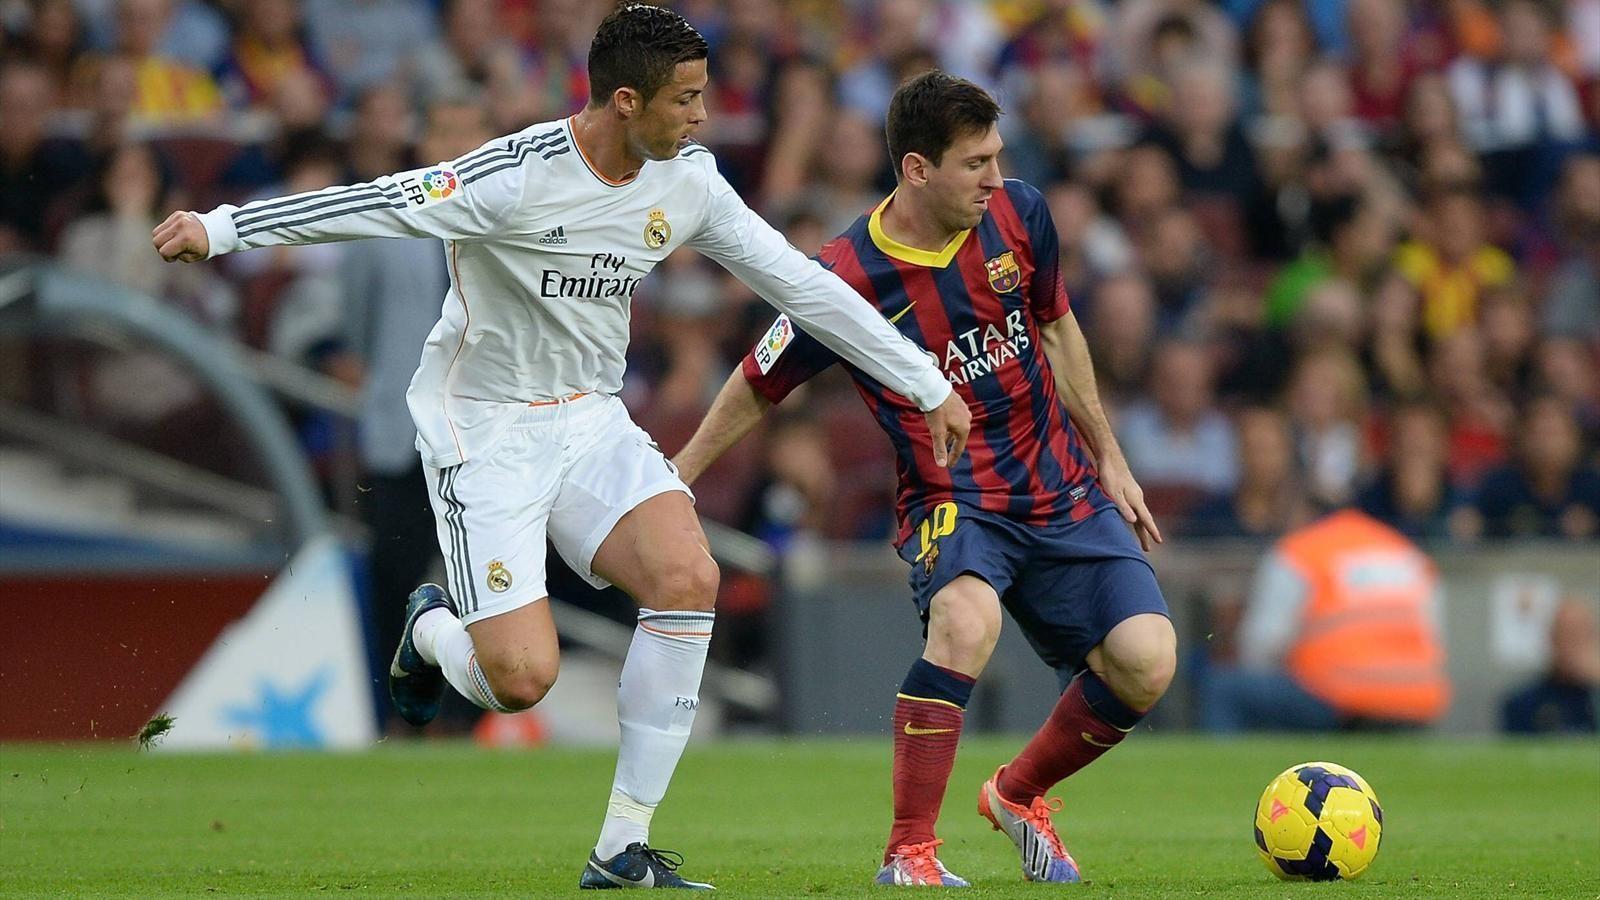 Cristiano Ronaldo vs Lionel Messi HD Image